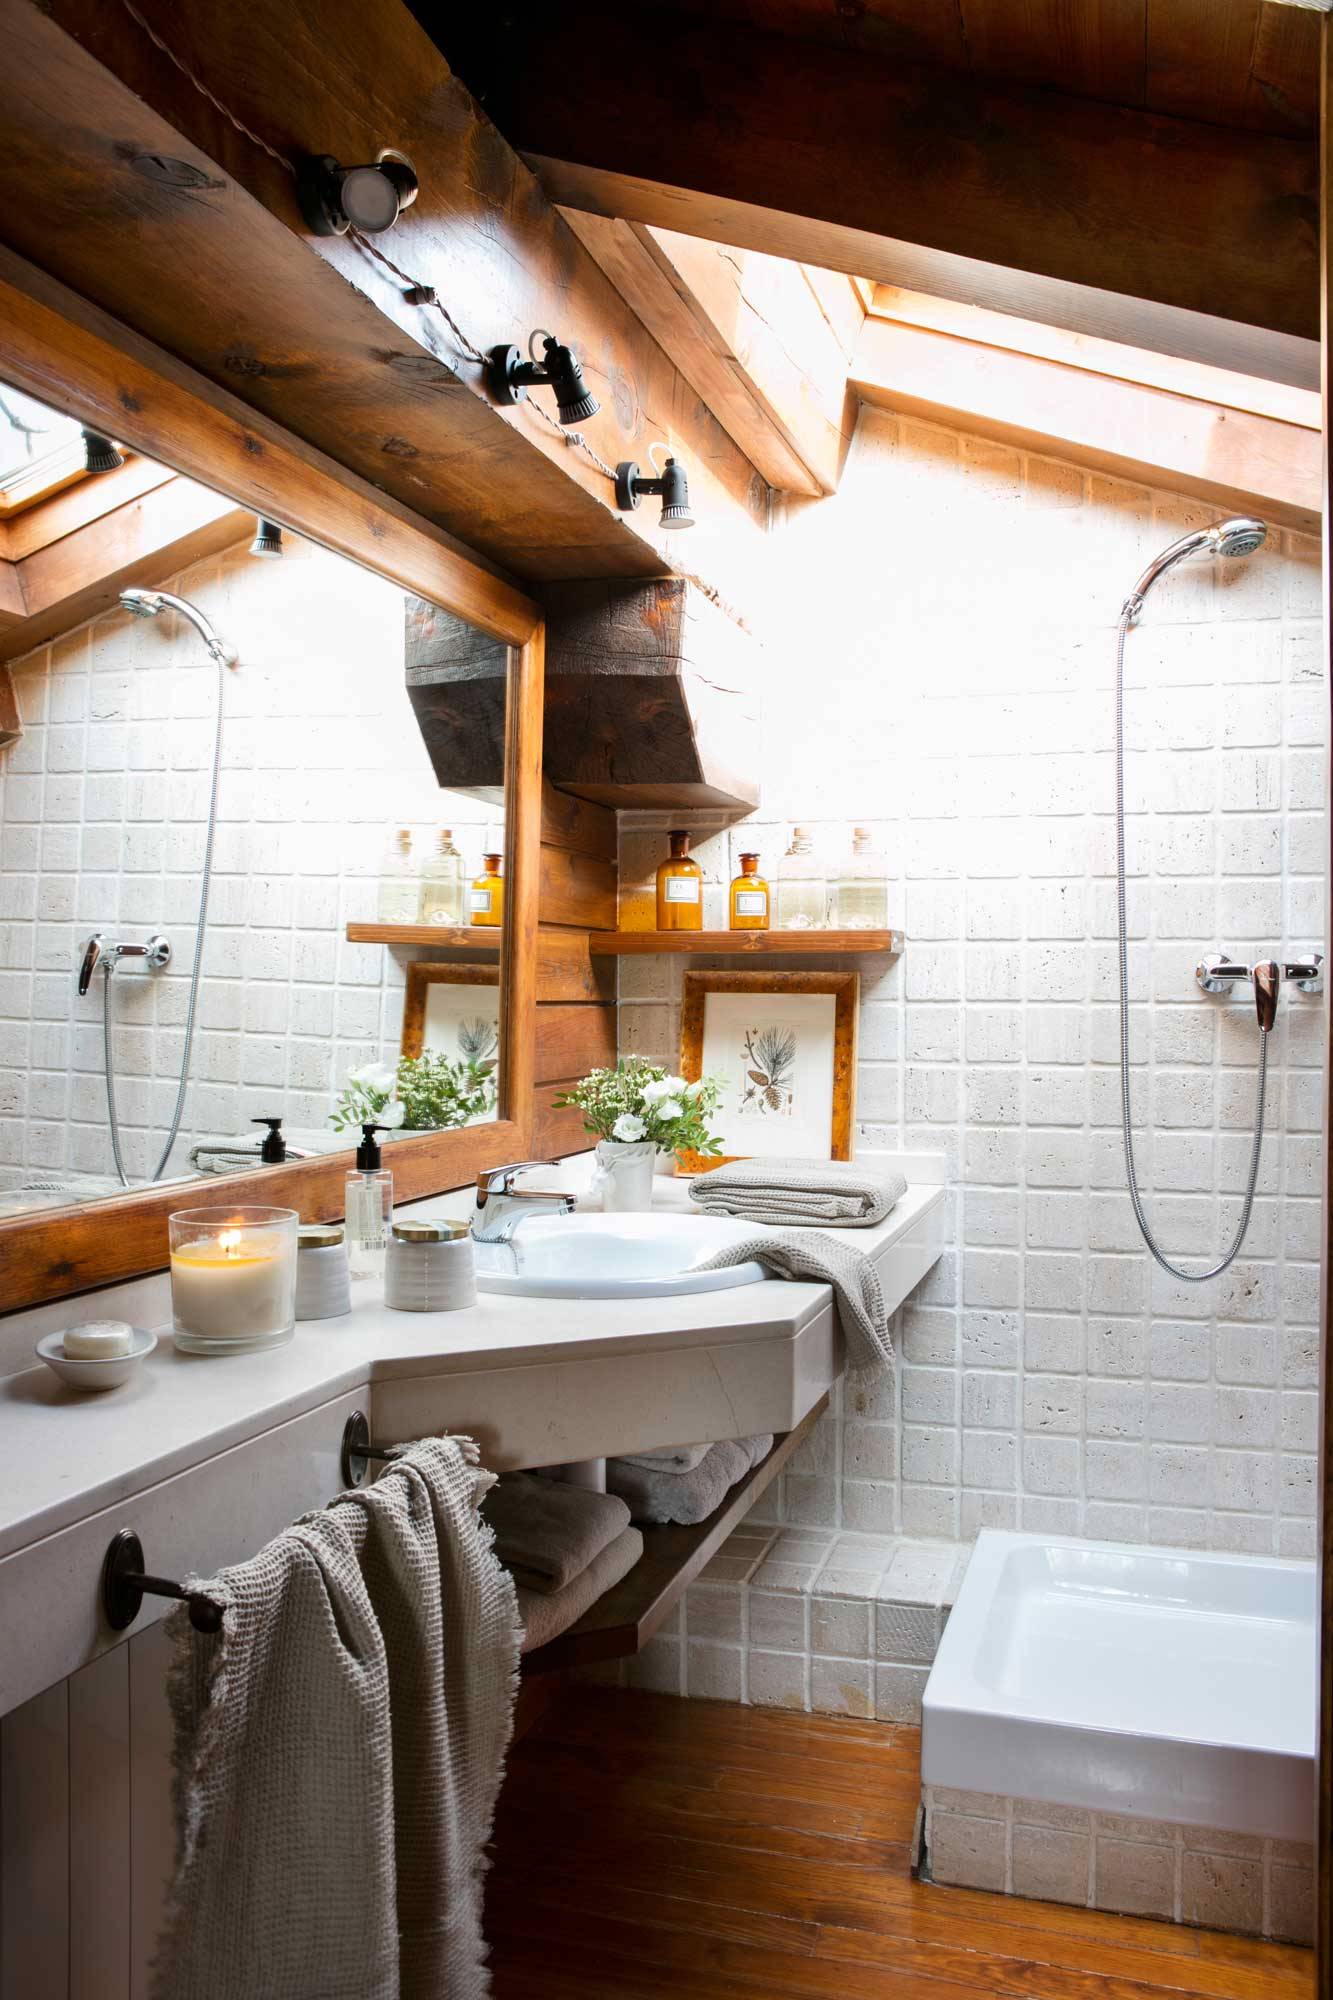 Baño rústico abuhardillado con techo de madera y paredes revestidas con azulejos blancos. 